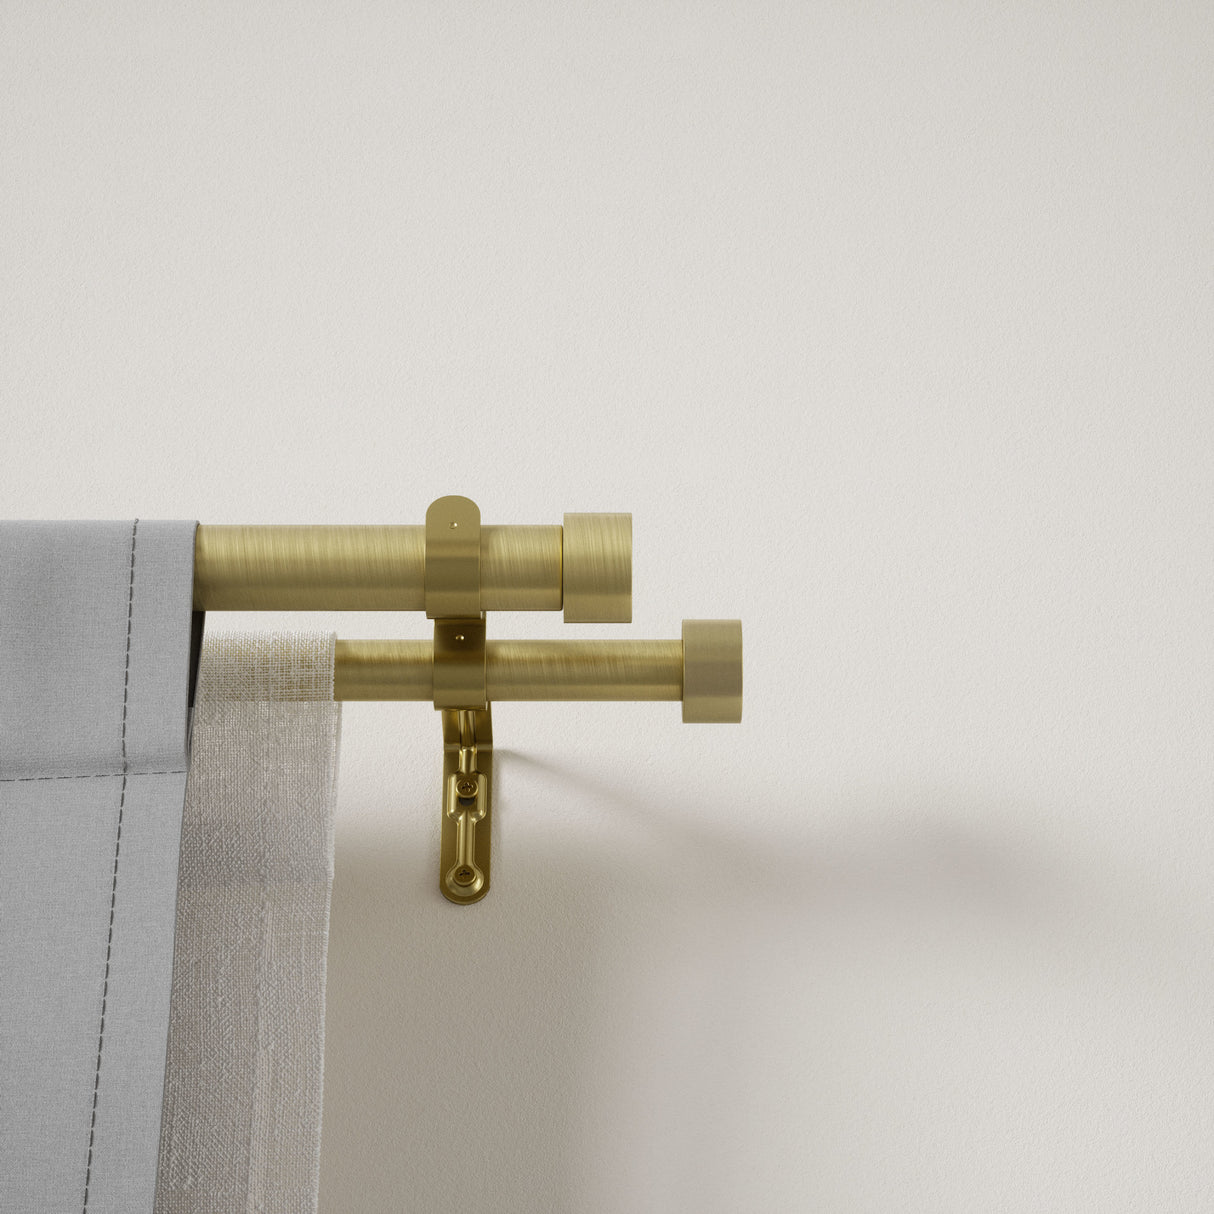 Double Curtain Rods | color: Brass | size: 120-180"(305-457cm) | diameter: 1"(2.5cm) | https://vimeo.com/625708718